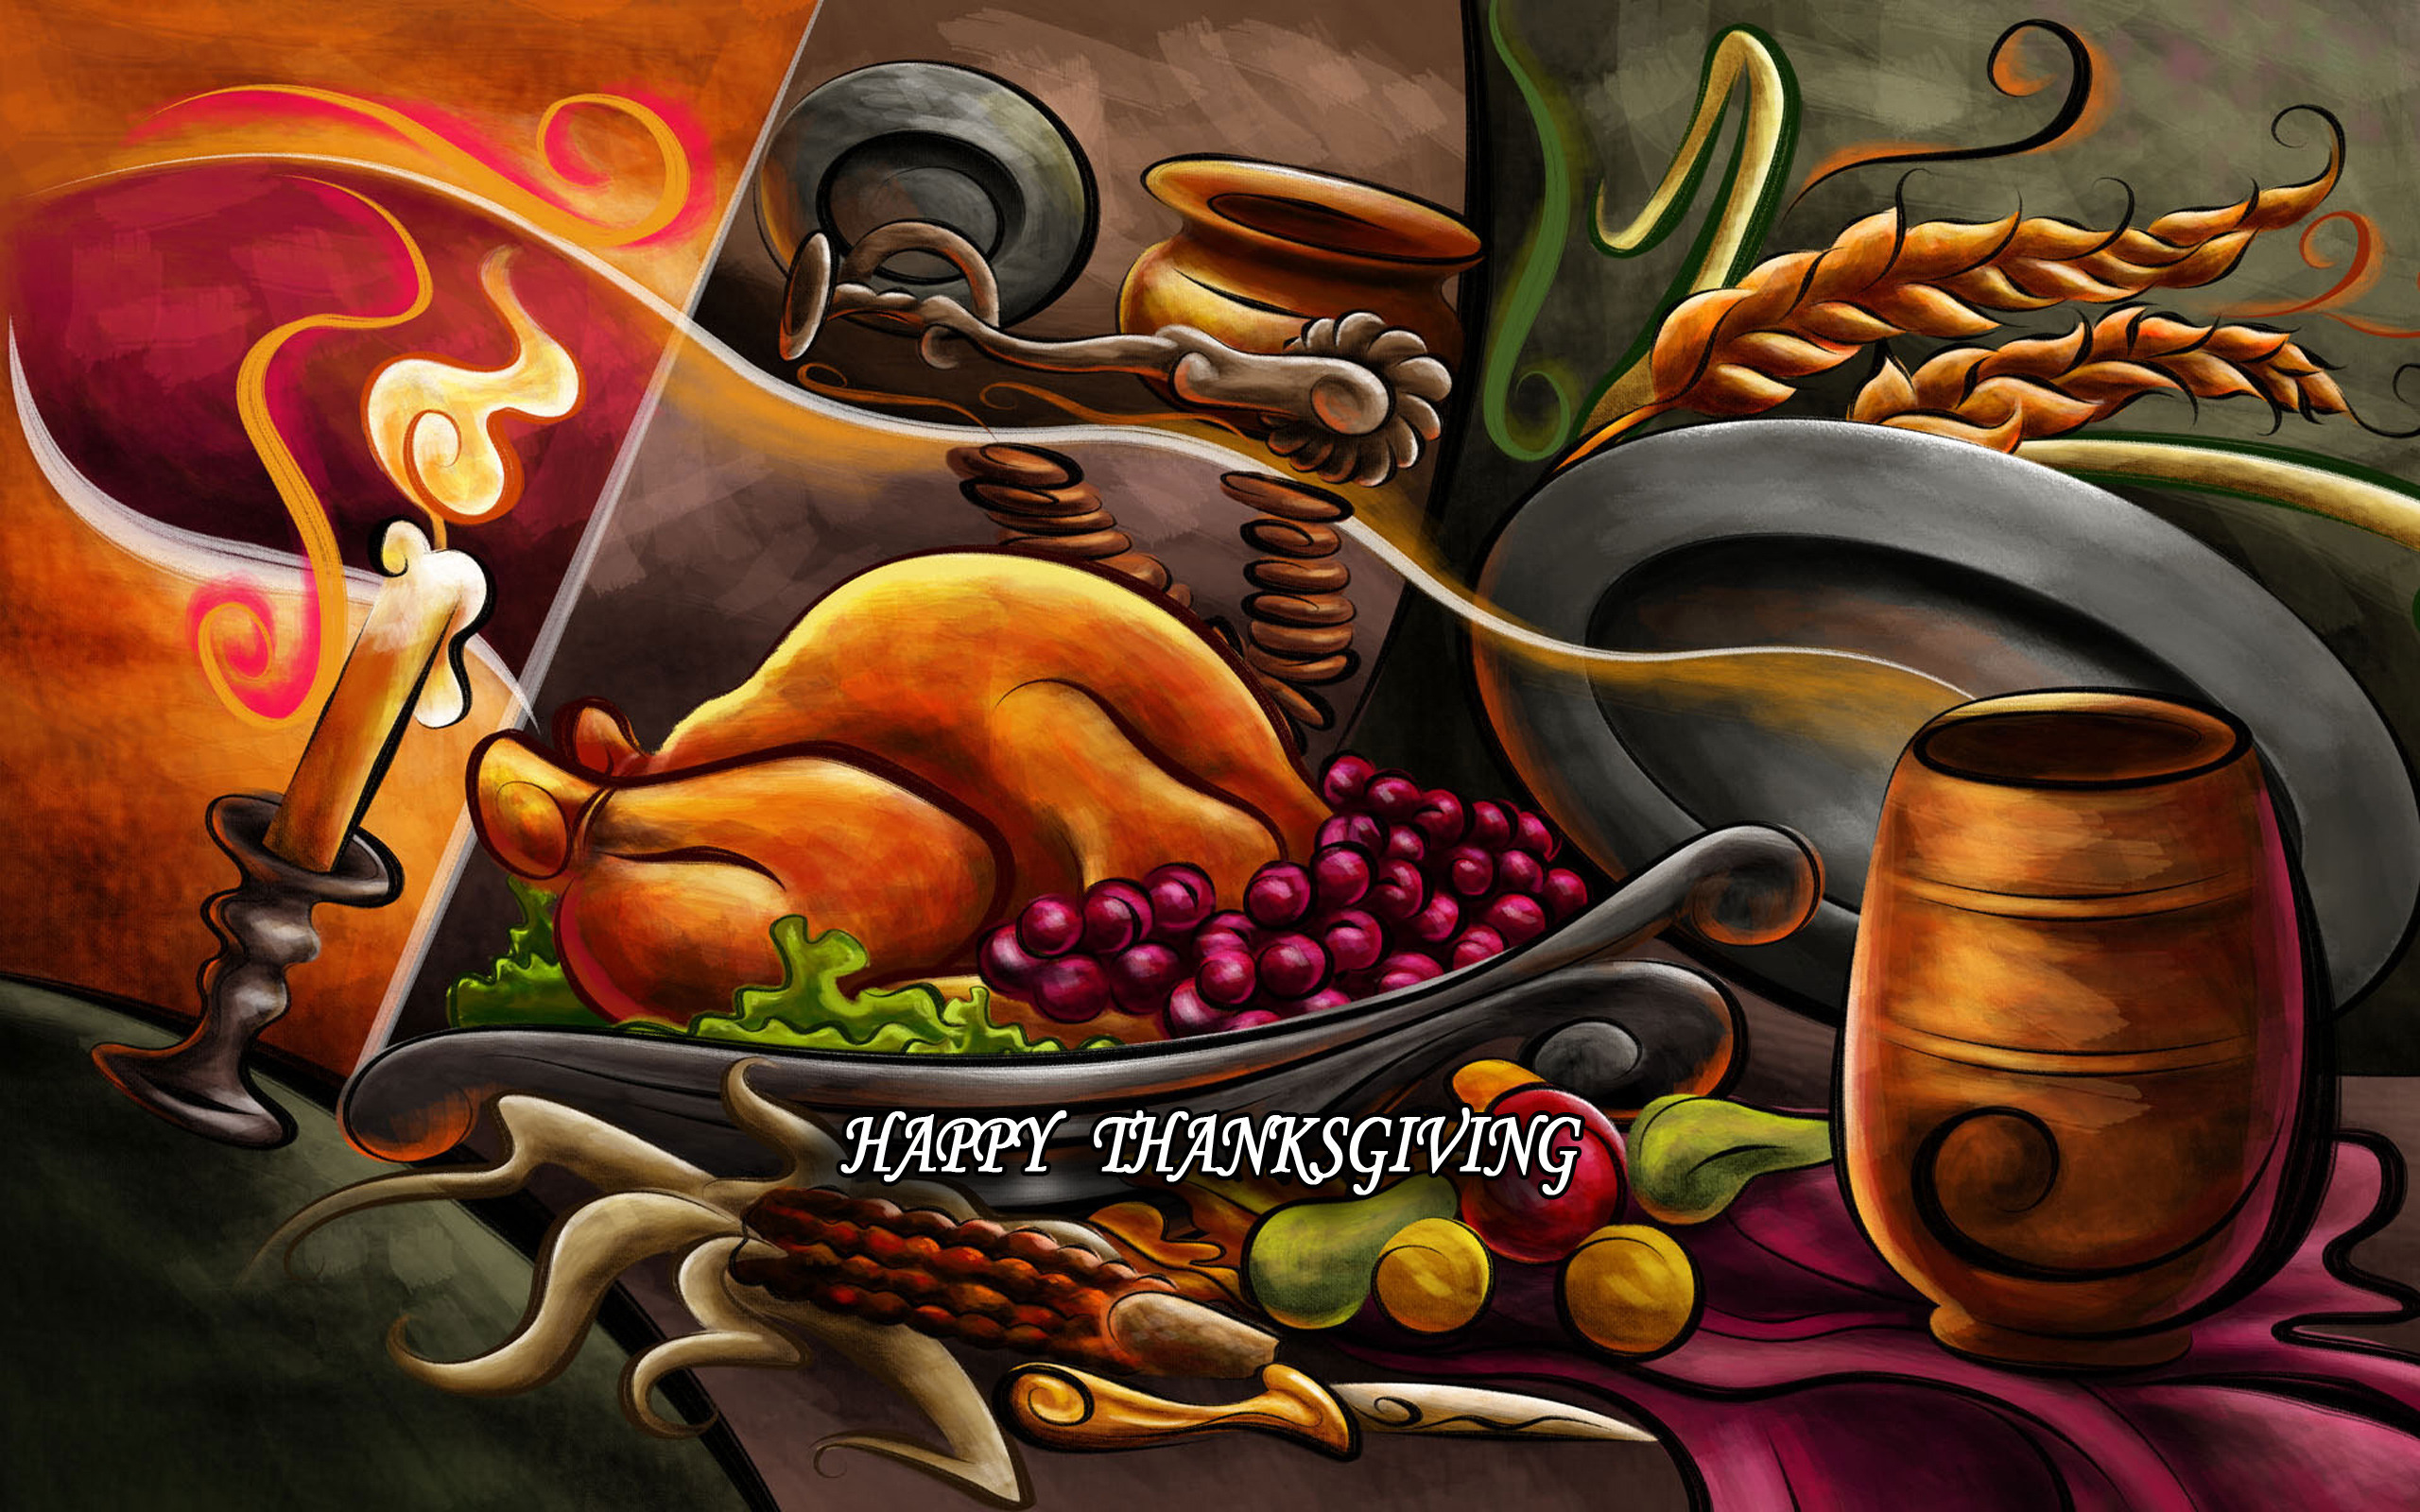 Скачать обои бесплатно День Благодарения, Праздничные картинка на рабочий стол ПК